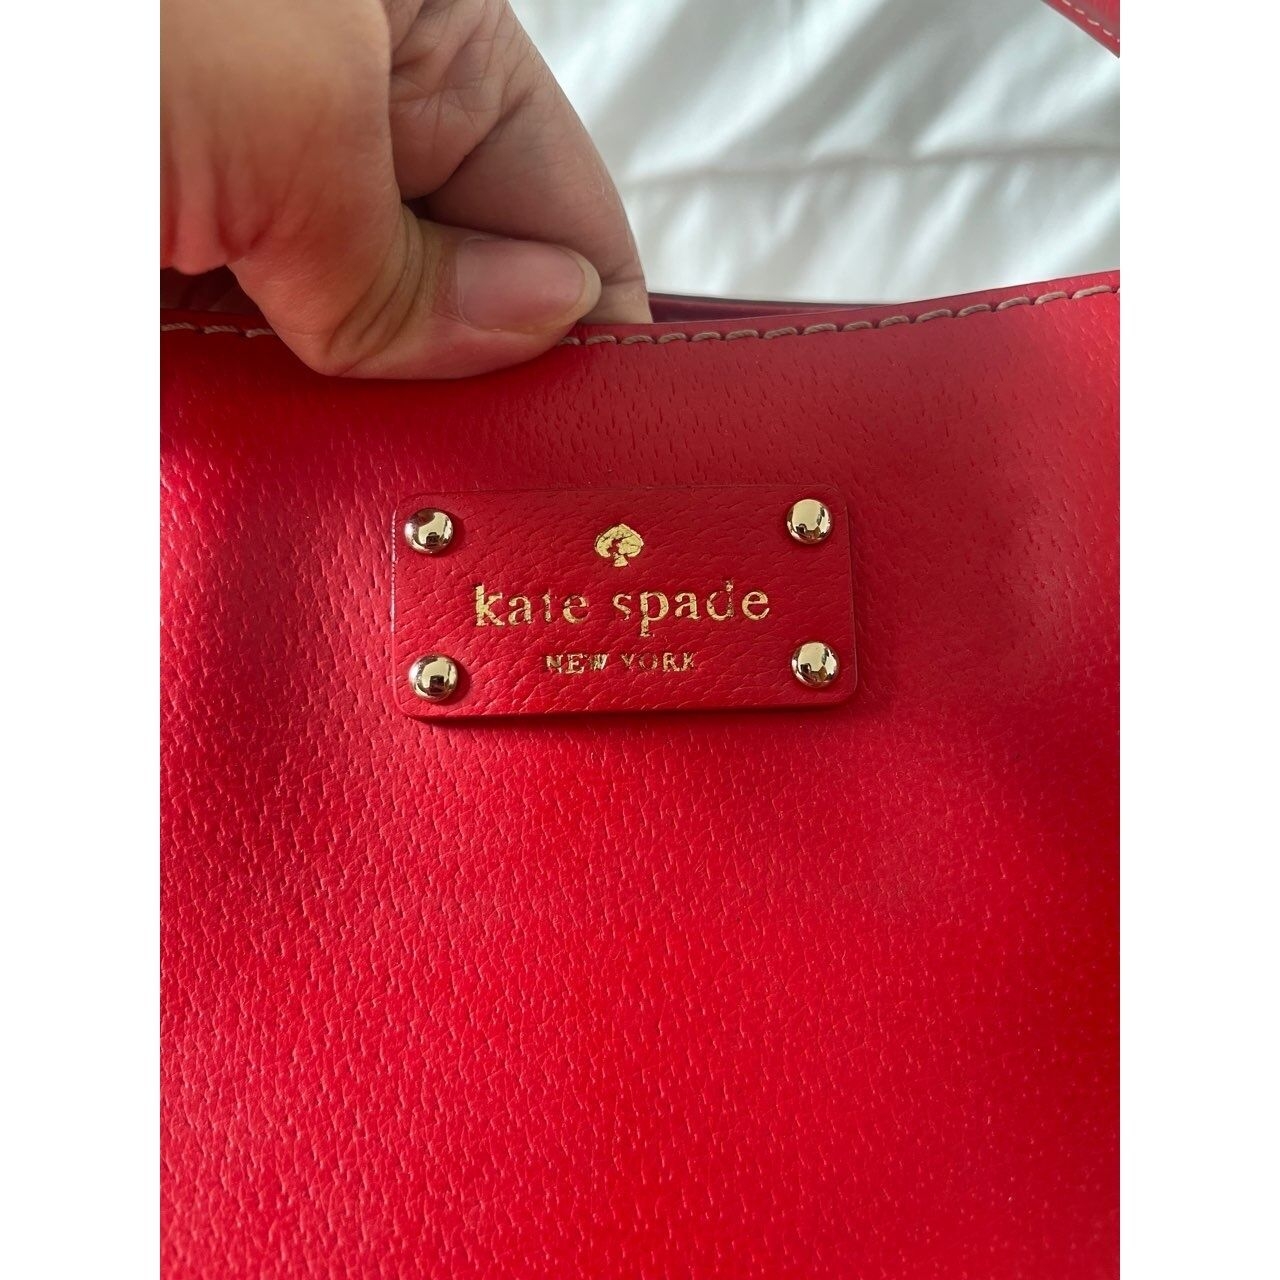 Kate Spade New York Red Tote Bag